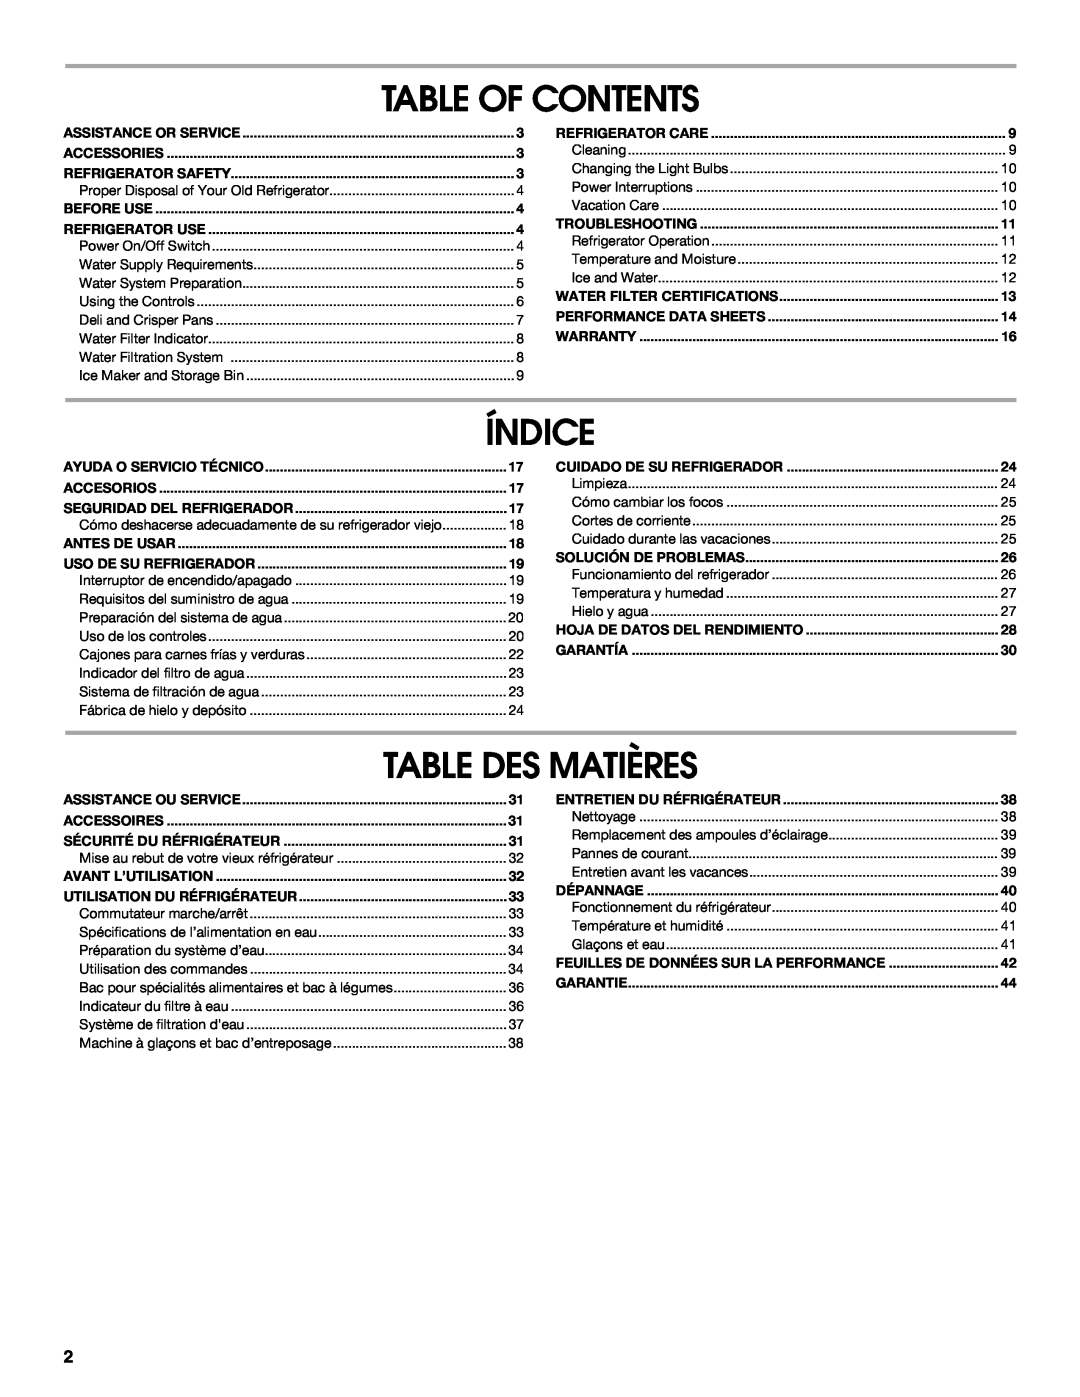 Jenn-Air W10183787A manual Table Of Contents, Índice, Table Des Matières, Feuilles De Données Sur La Performance 